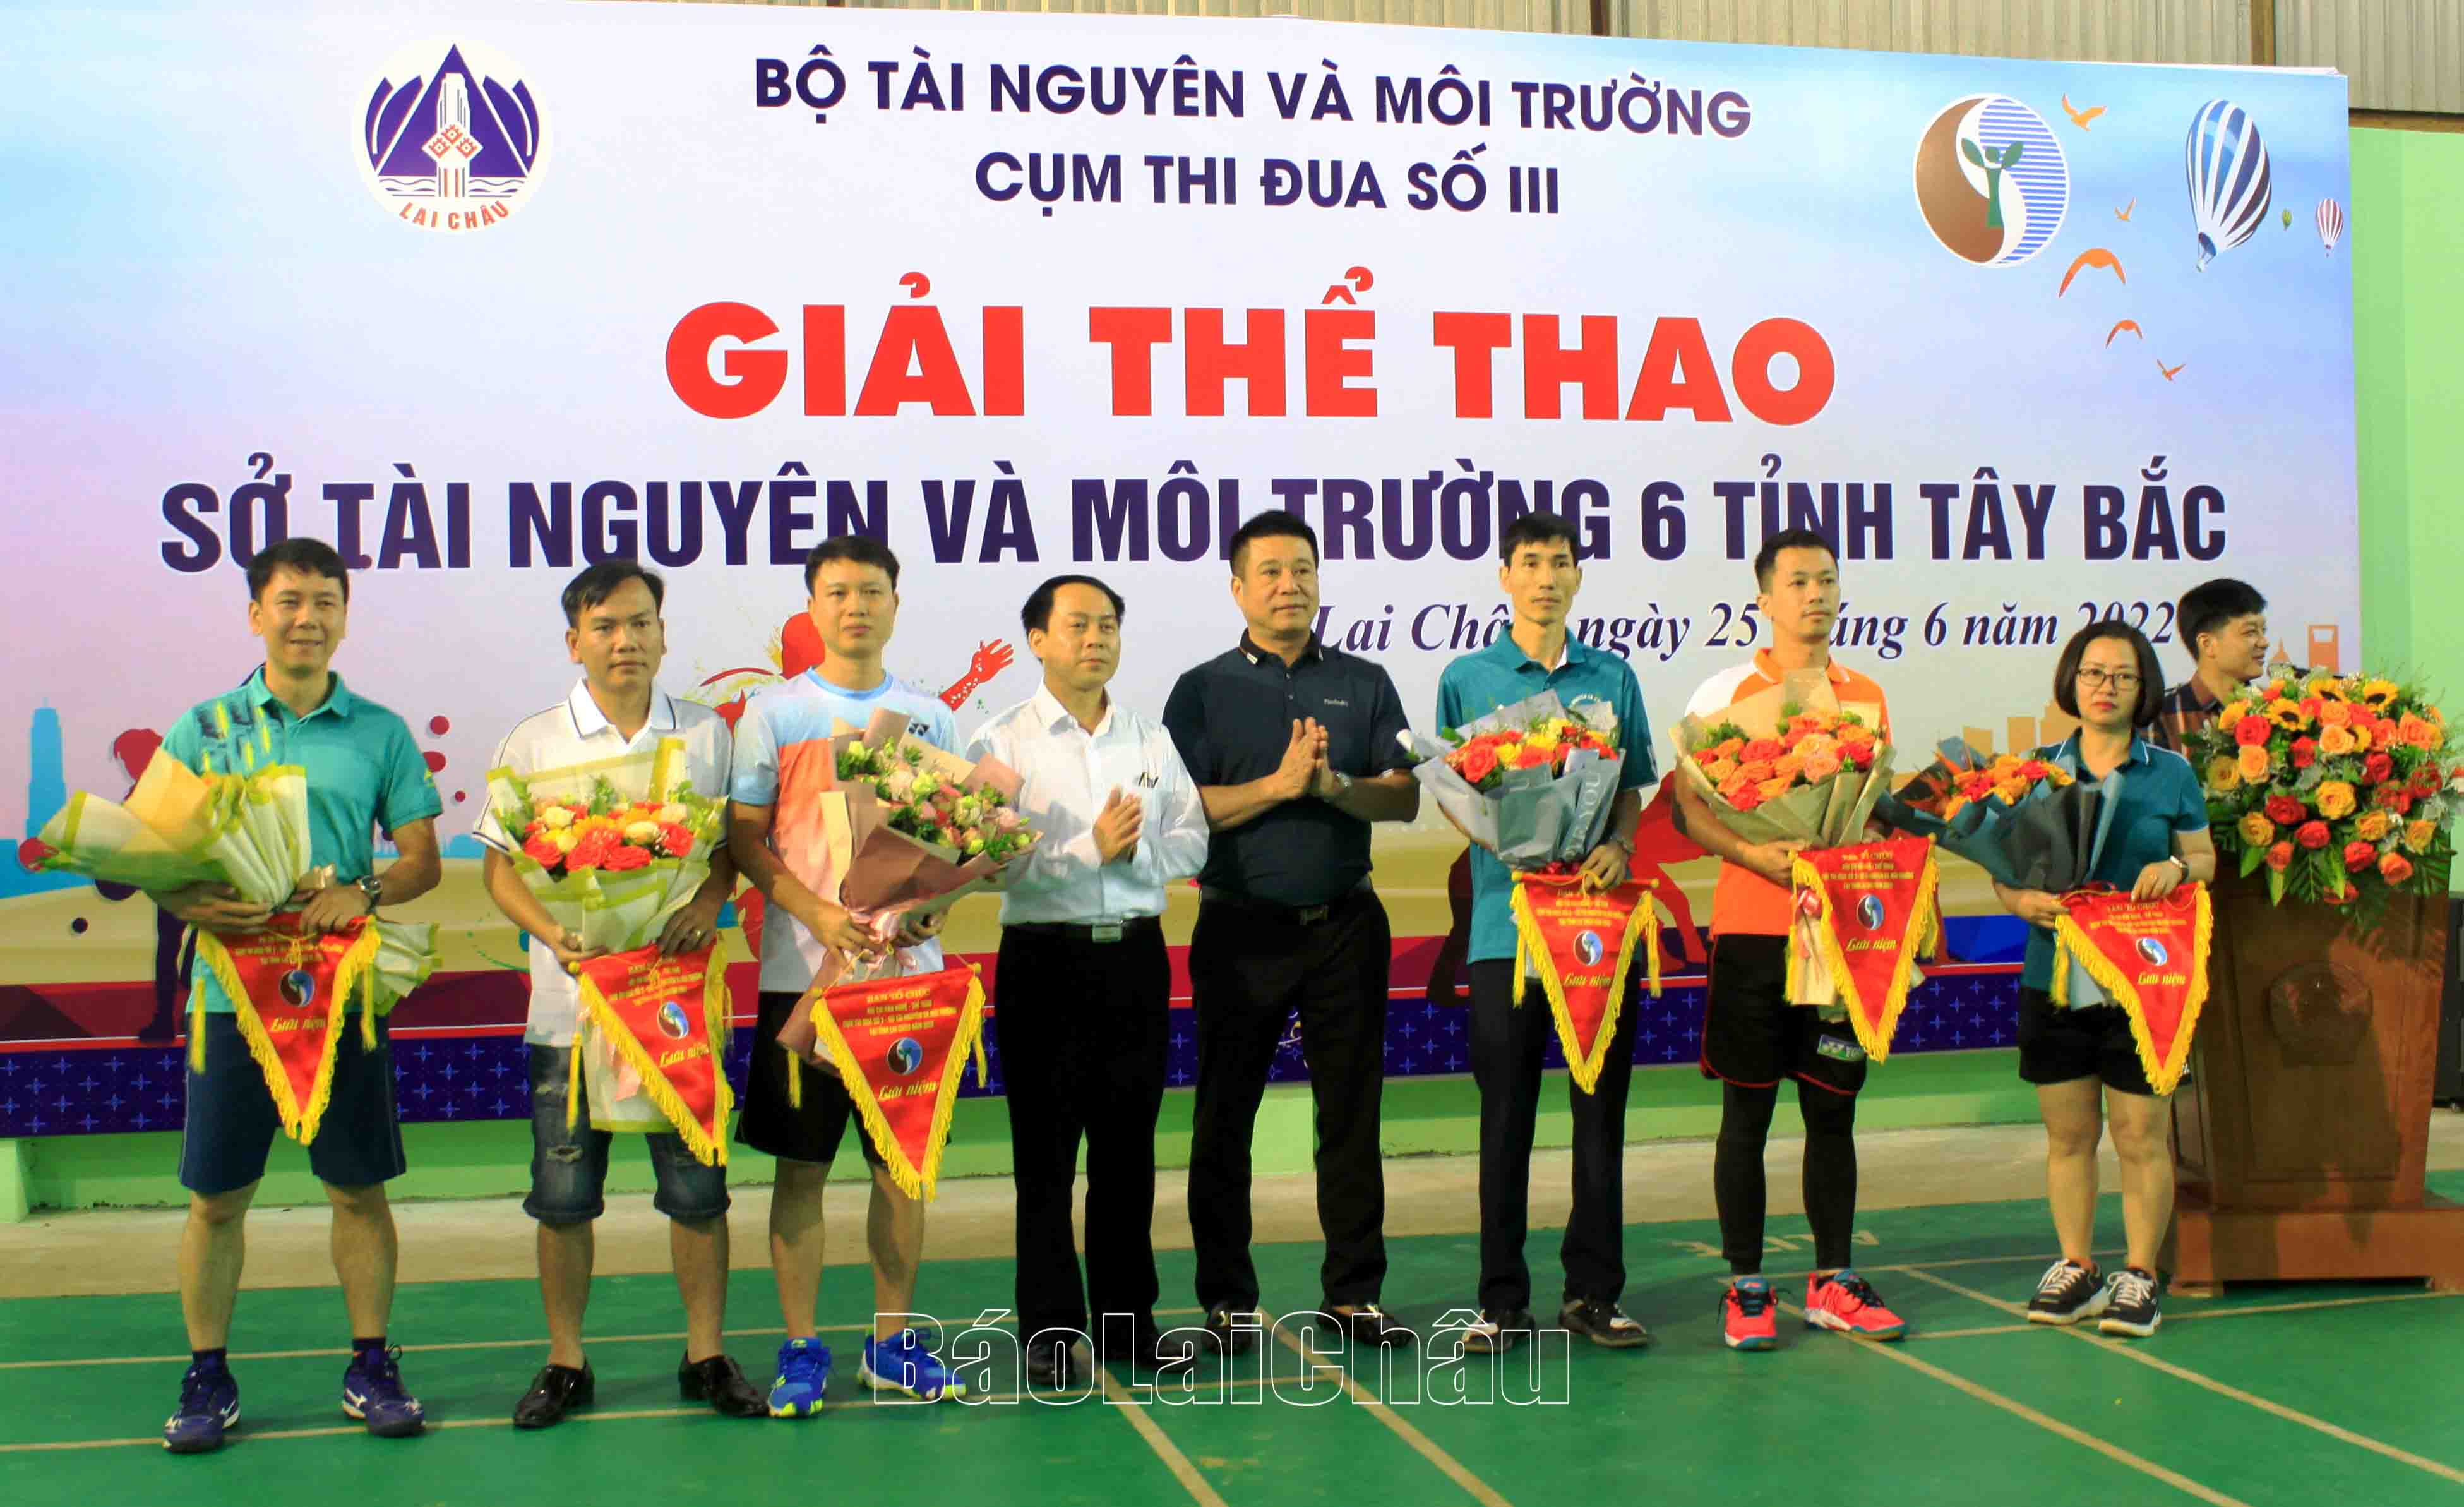 Đại diện Ban Tổ chức tặng hoa và cờ lưu niệm cho các đội tham gia thi đấu.